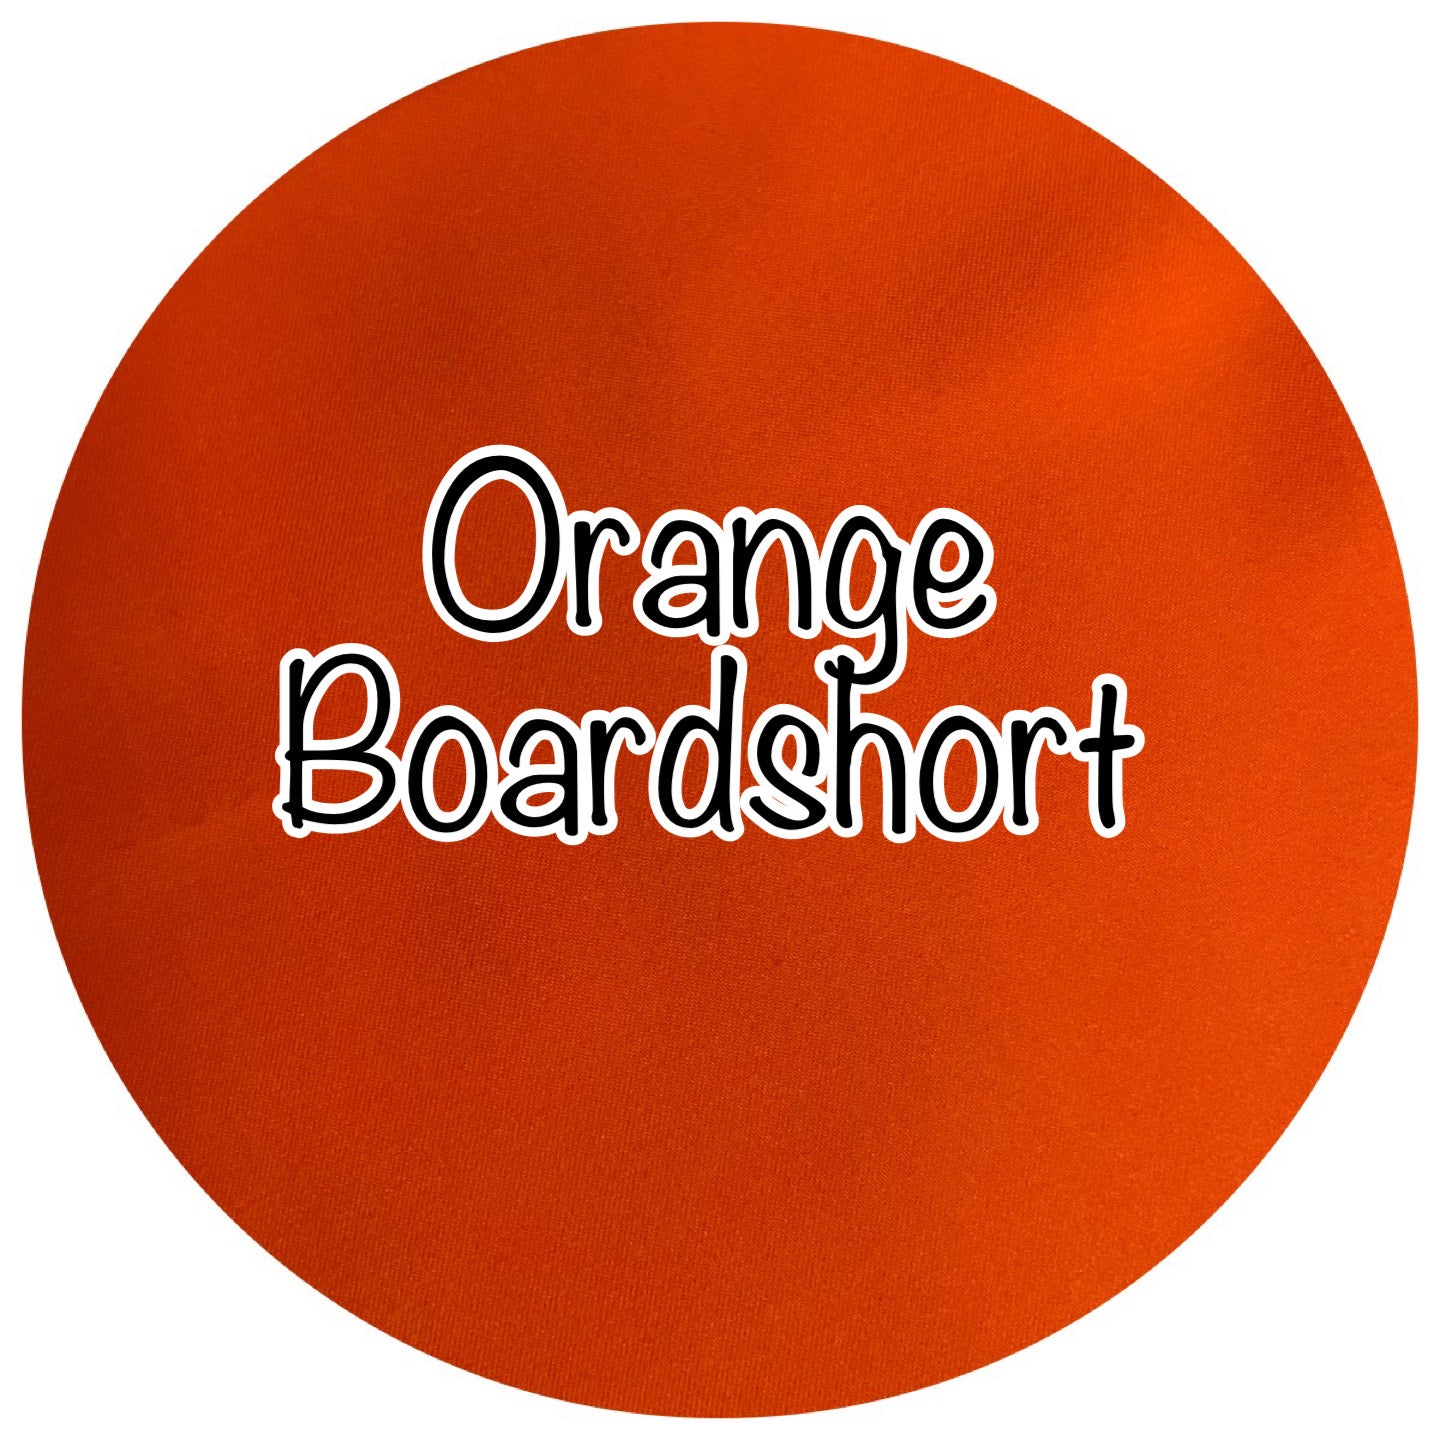 Orange Board Shorts